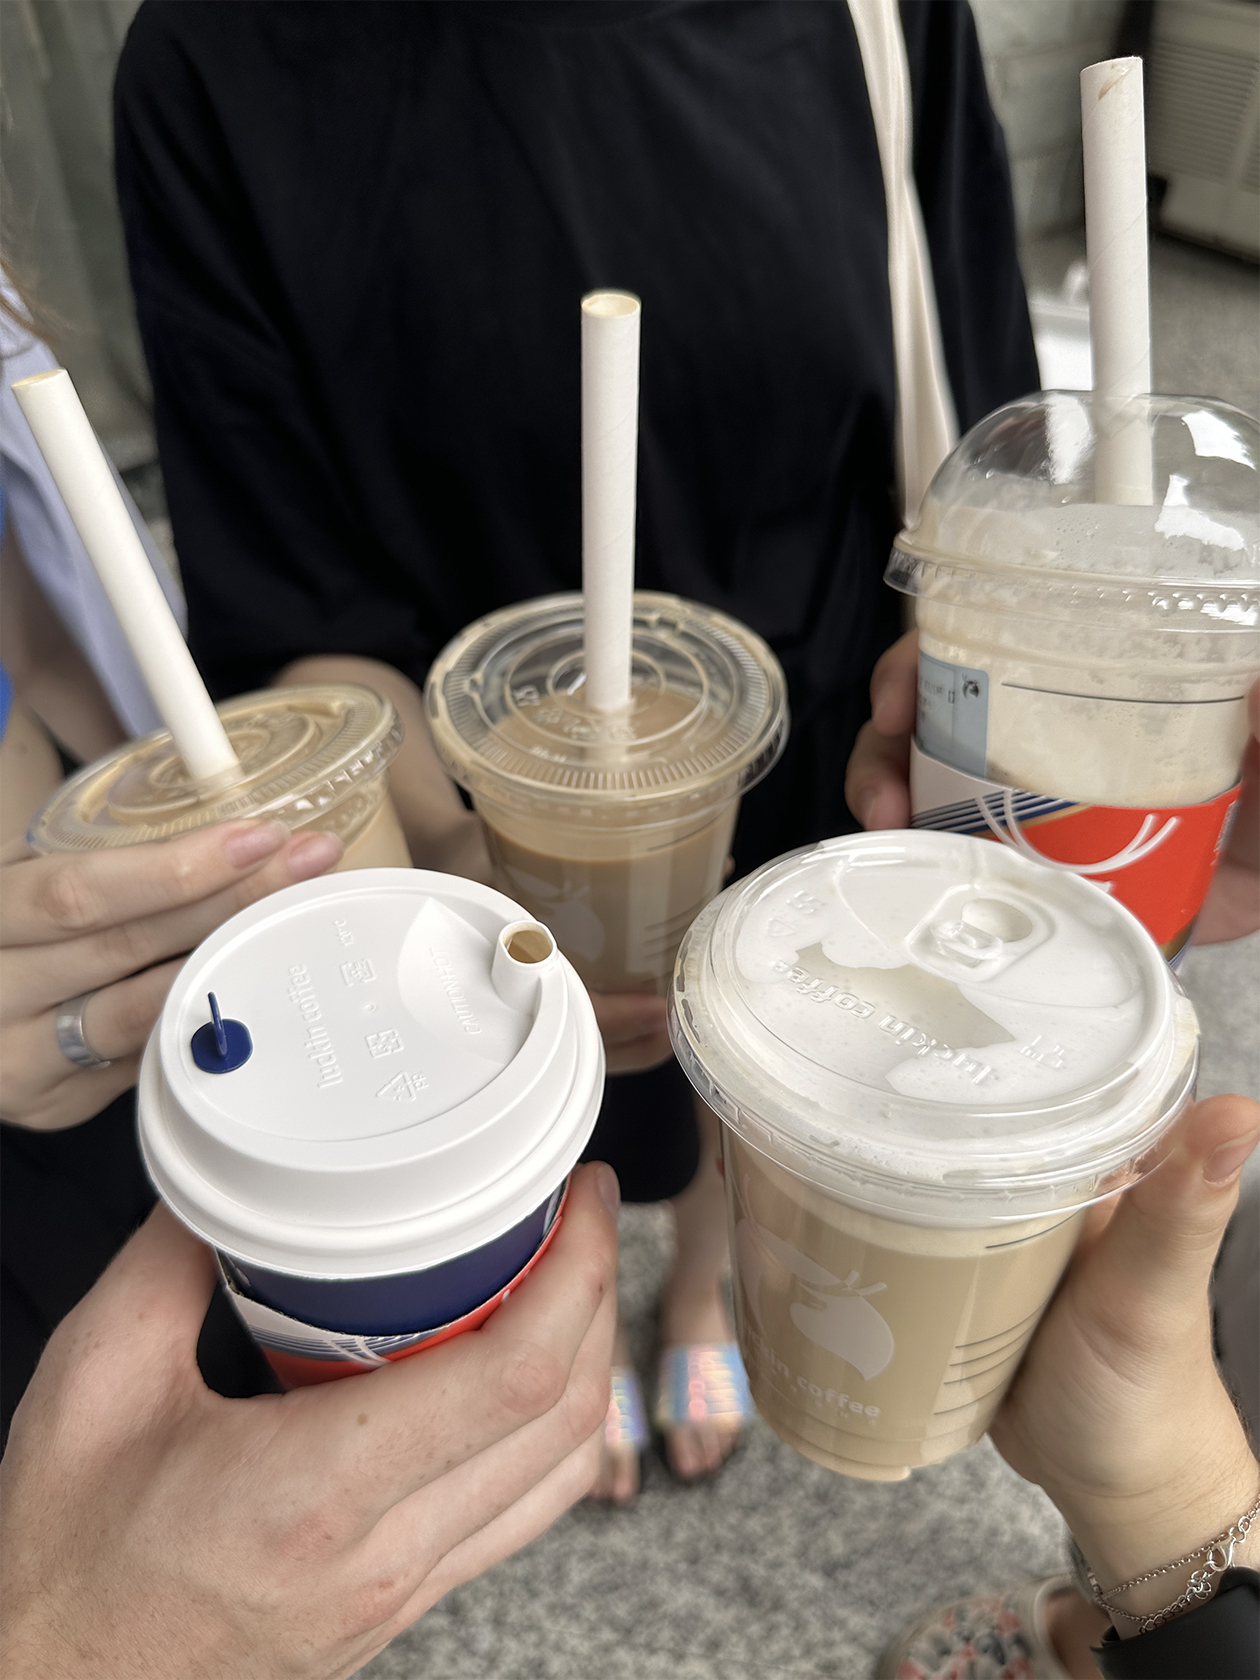 Заказать кофе можно в Alipay, потом отсканировать QR⁠-⁠код в мобильном приложении и забрать свой напиток